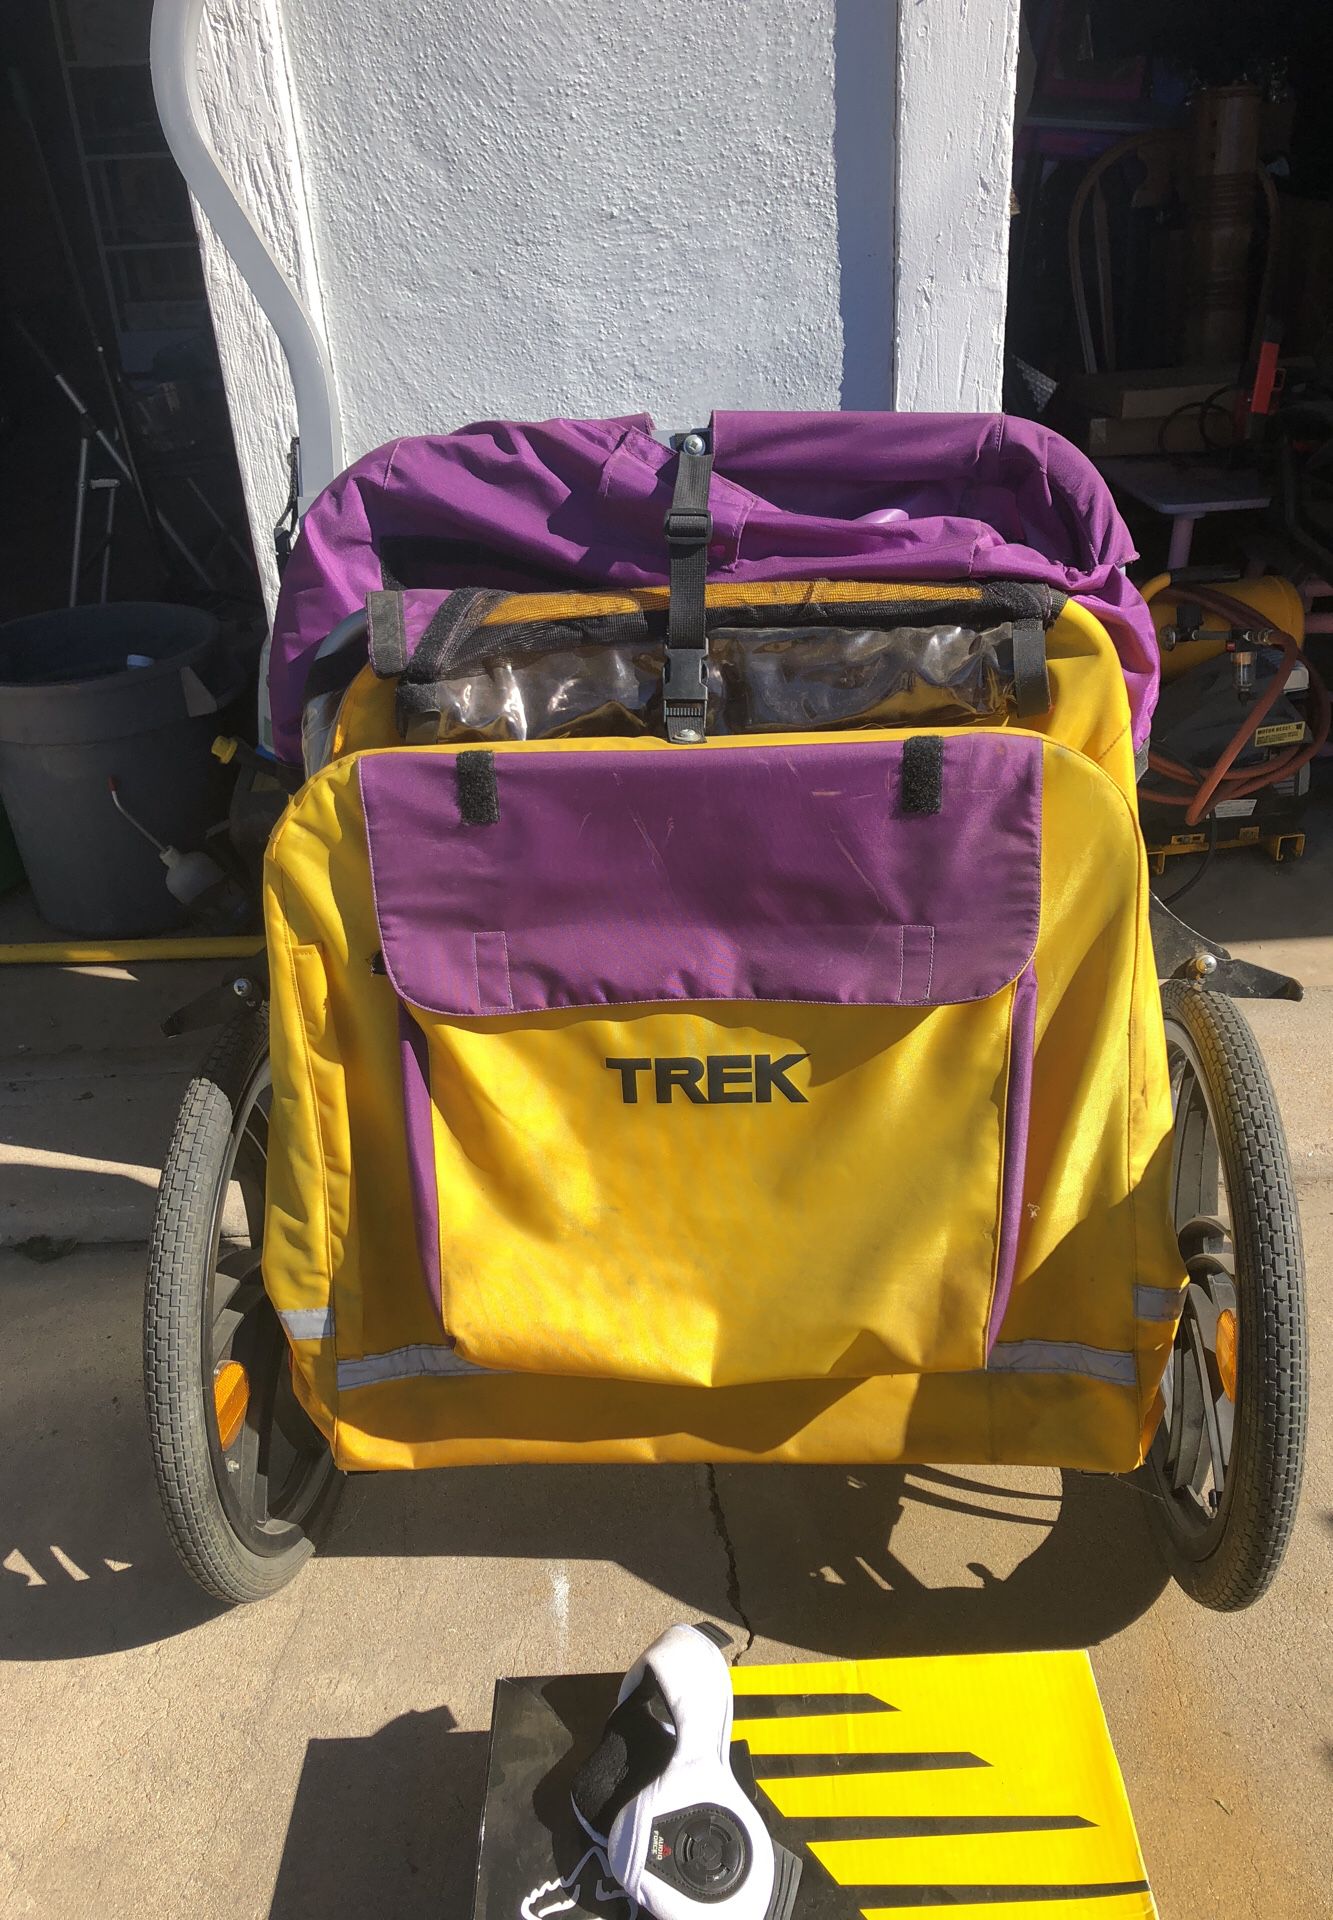 Trek 2 seater bike trailer